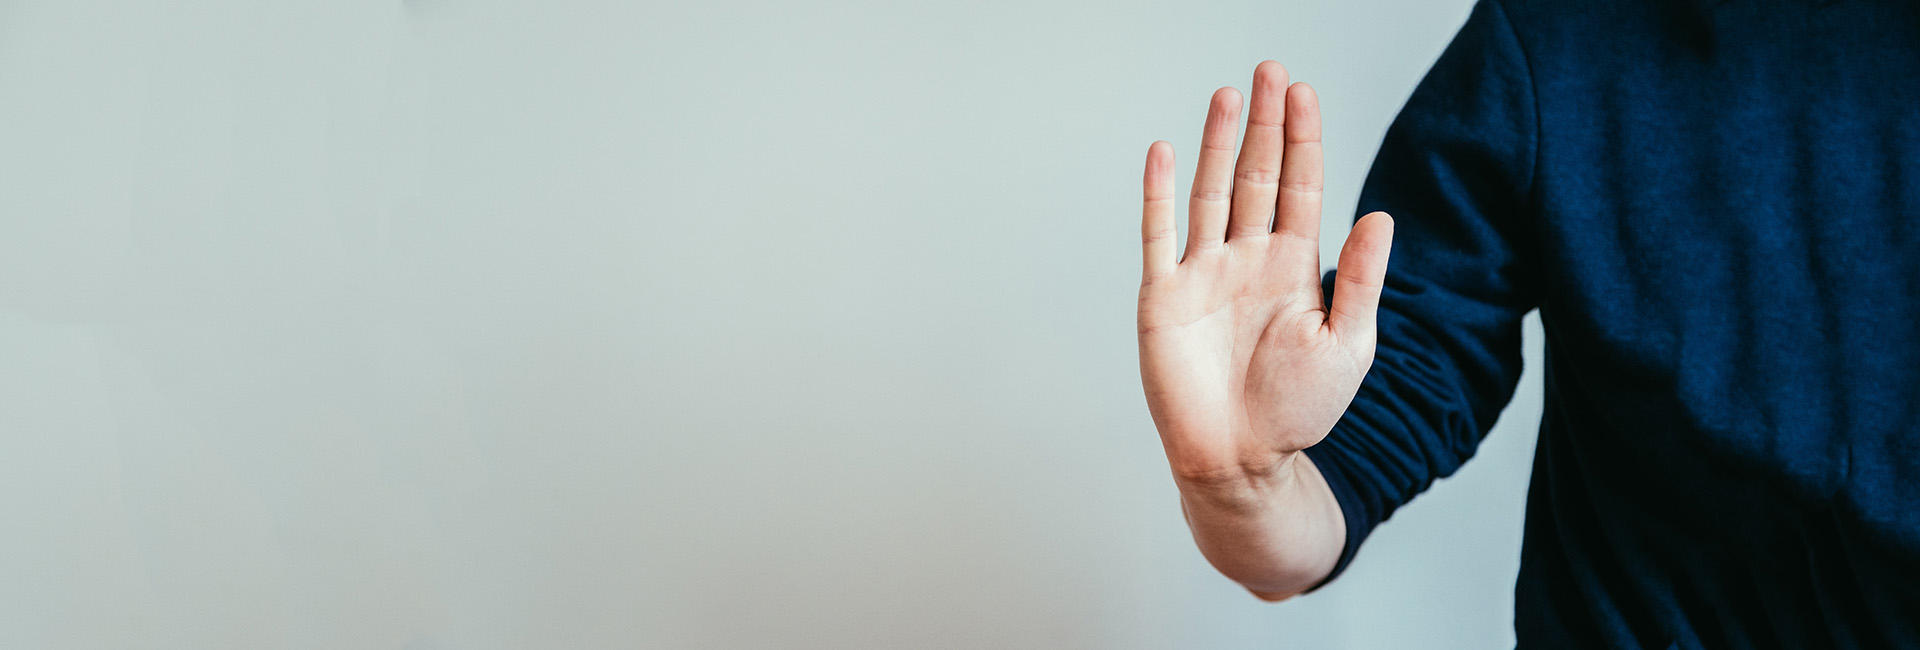 Heimopferrente: Hand zeigt Stopp-Geste